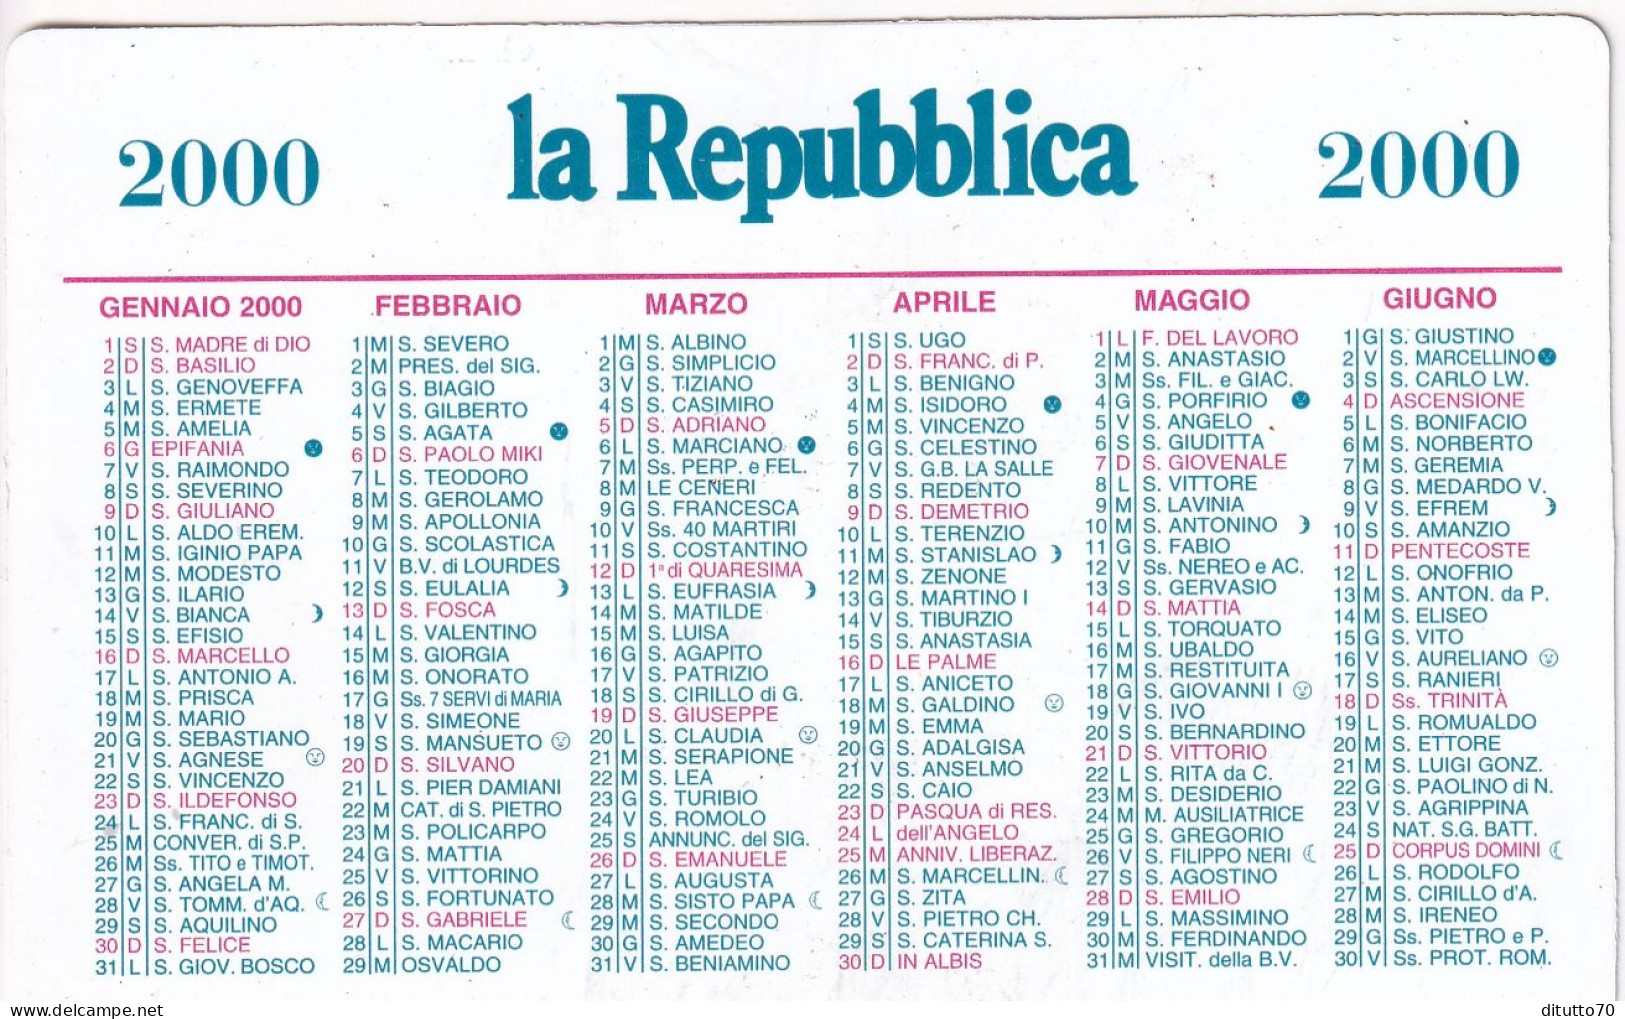 Calendarietto - La Repubblica - Anno 2000 - Kleinformat : 1991-00